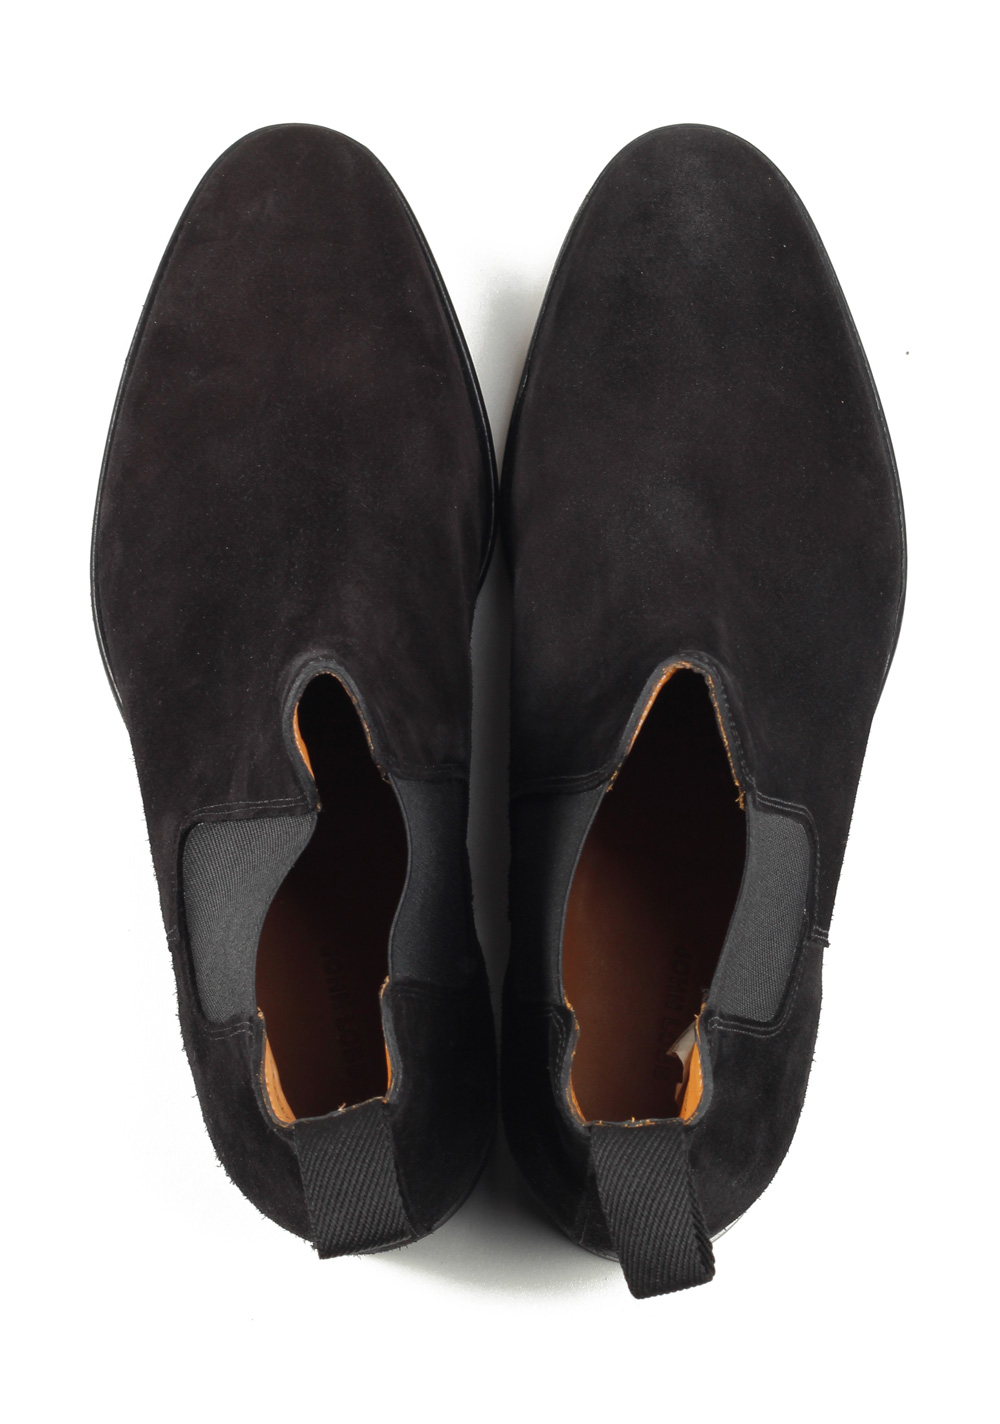 John Lobb Lawry Black Chelsea Boot Shoes Size 7,5 UK / 8,5 U.S. On 8695 Last | Costume Limité